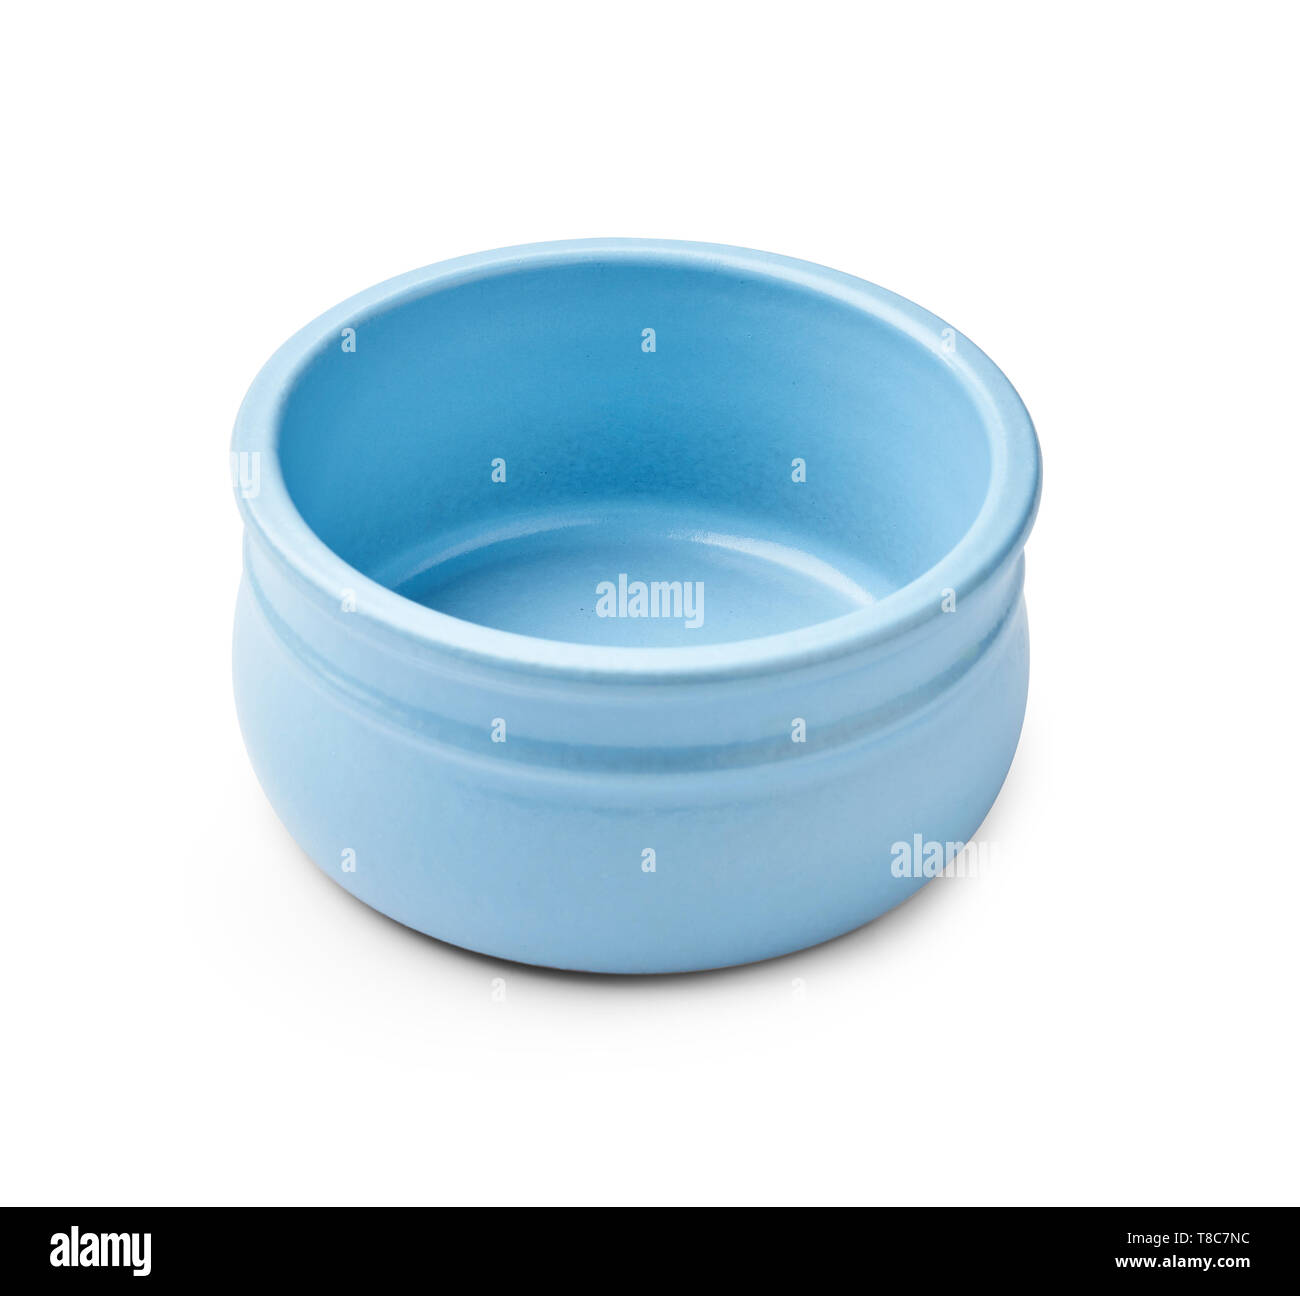 Blue bowl for yogurt isolated on white background Stock Photo